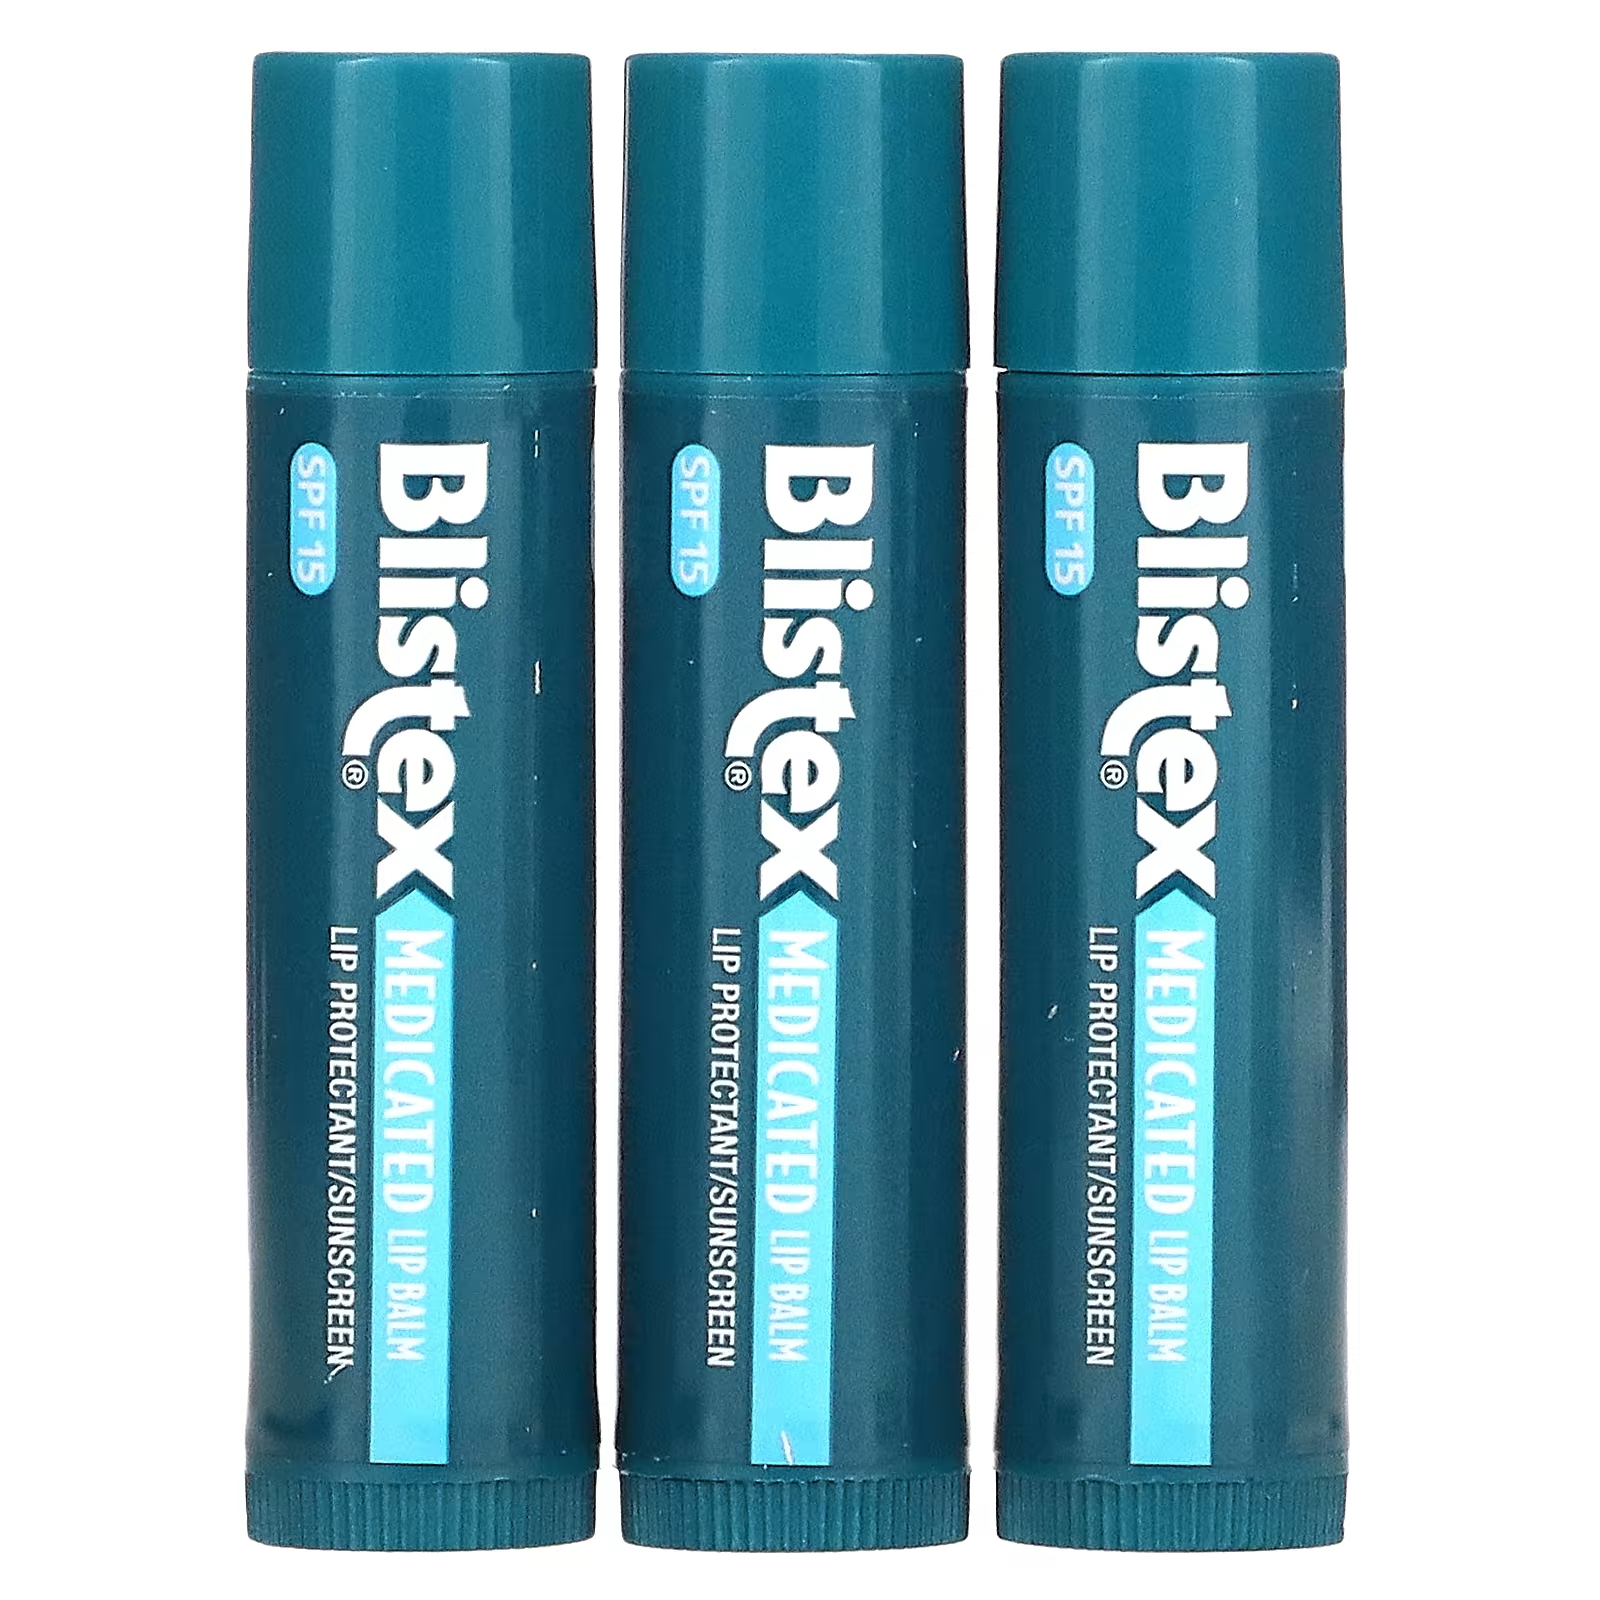 цена Blistex Лекарственное средство для защиты губ/солнцезащитный крем SPF 15, оригинальная упаковка из 3 бальзамов по 0,15 унции (4,25 г) каждая